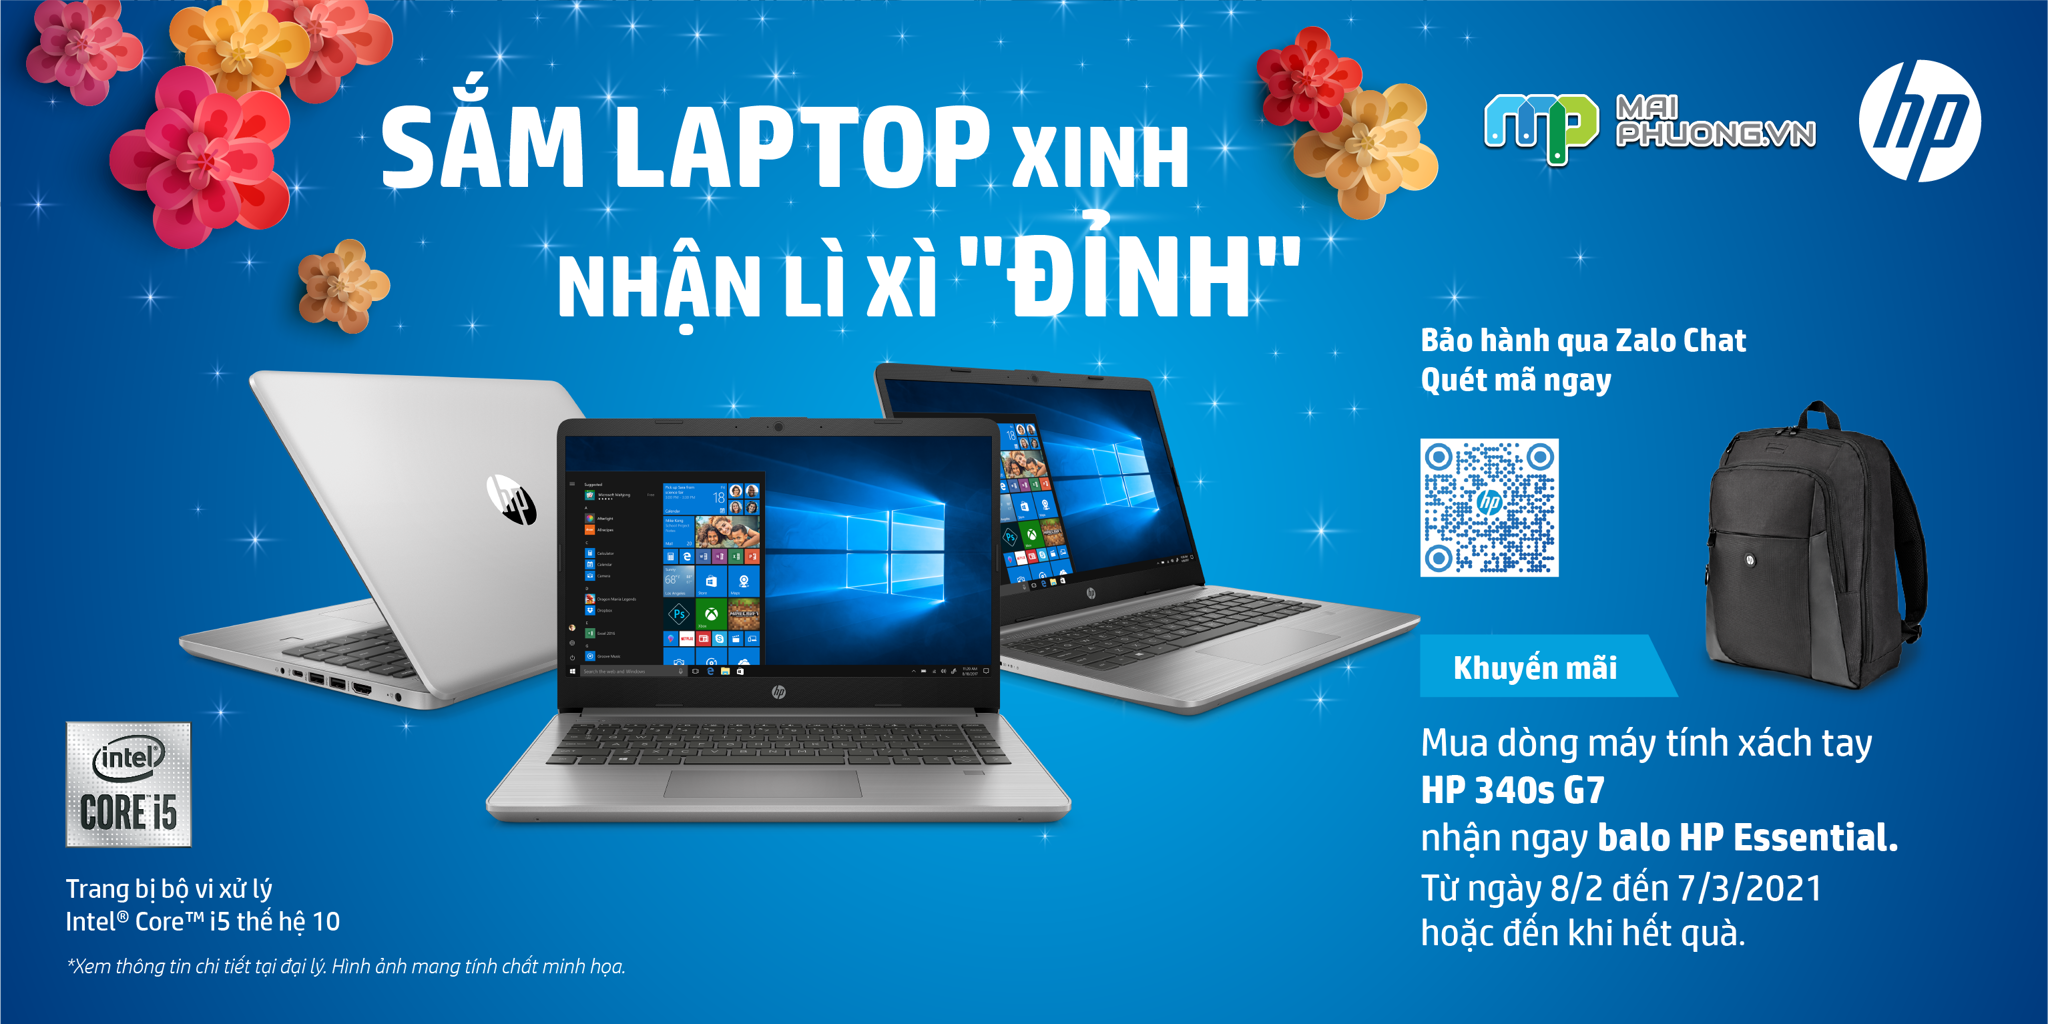 Vui tết HP - Sắm Laptop Xinh - Nhận Lì Xì 